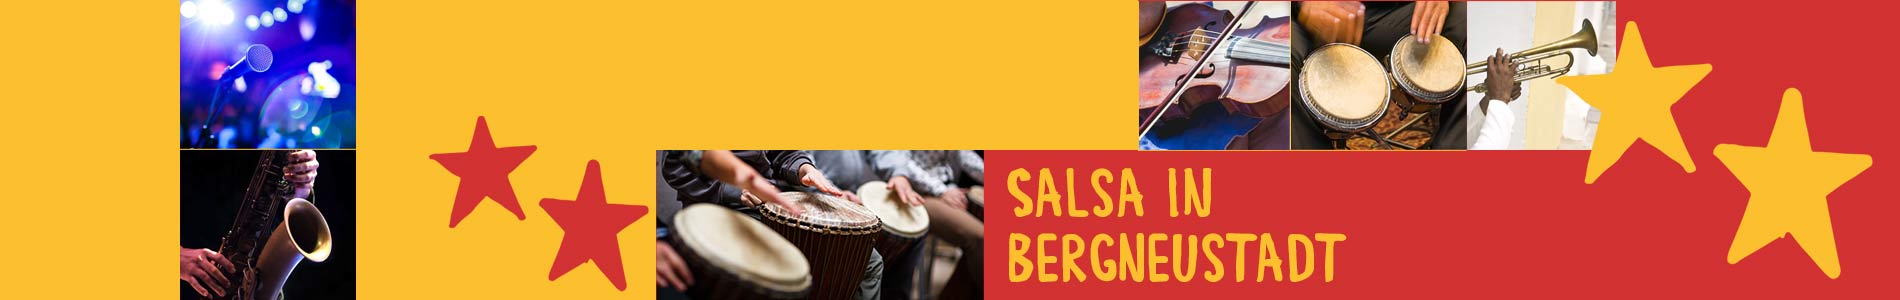 Salsa in Bergneustadt – Salsa lernen und tanzen, Tanzkurse, Partys, Veranstaltungen